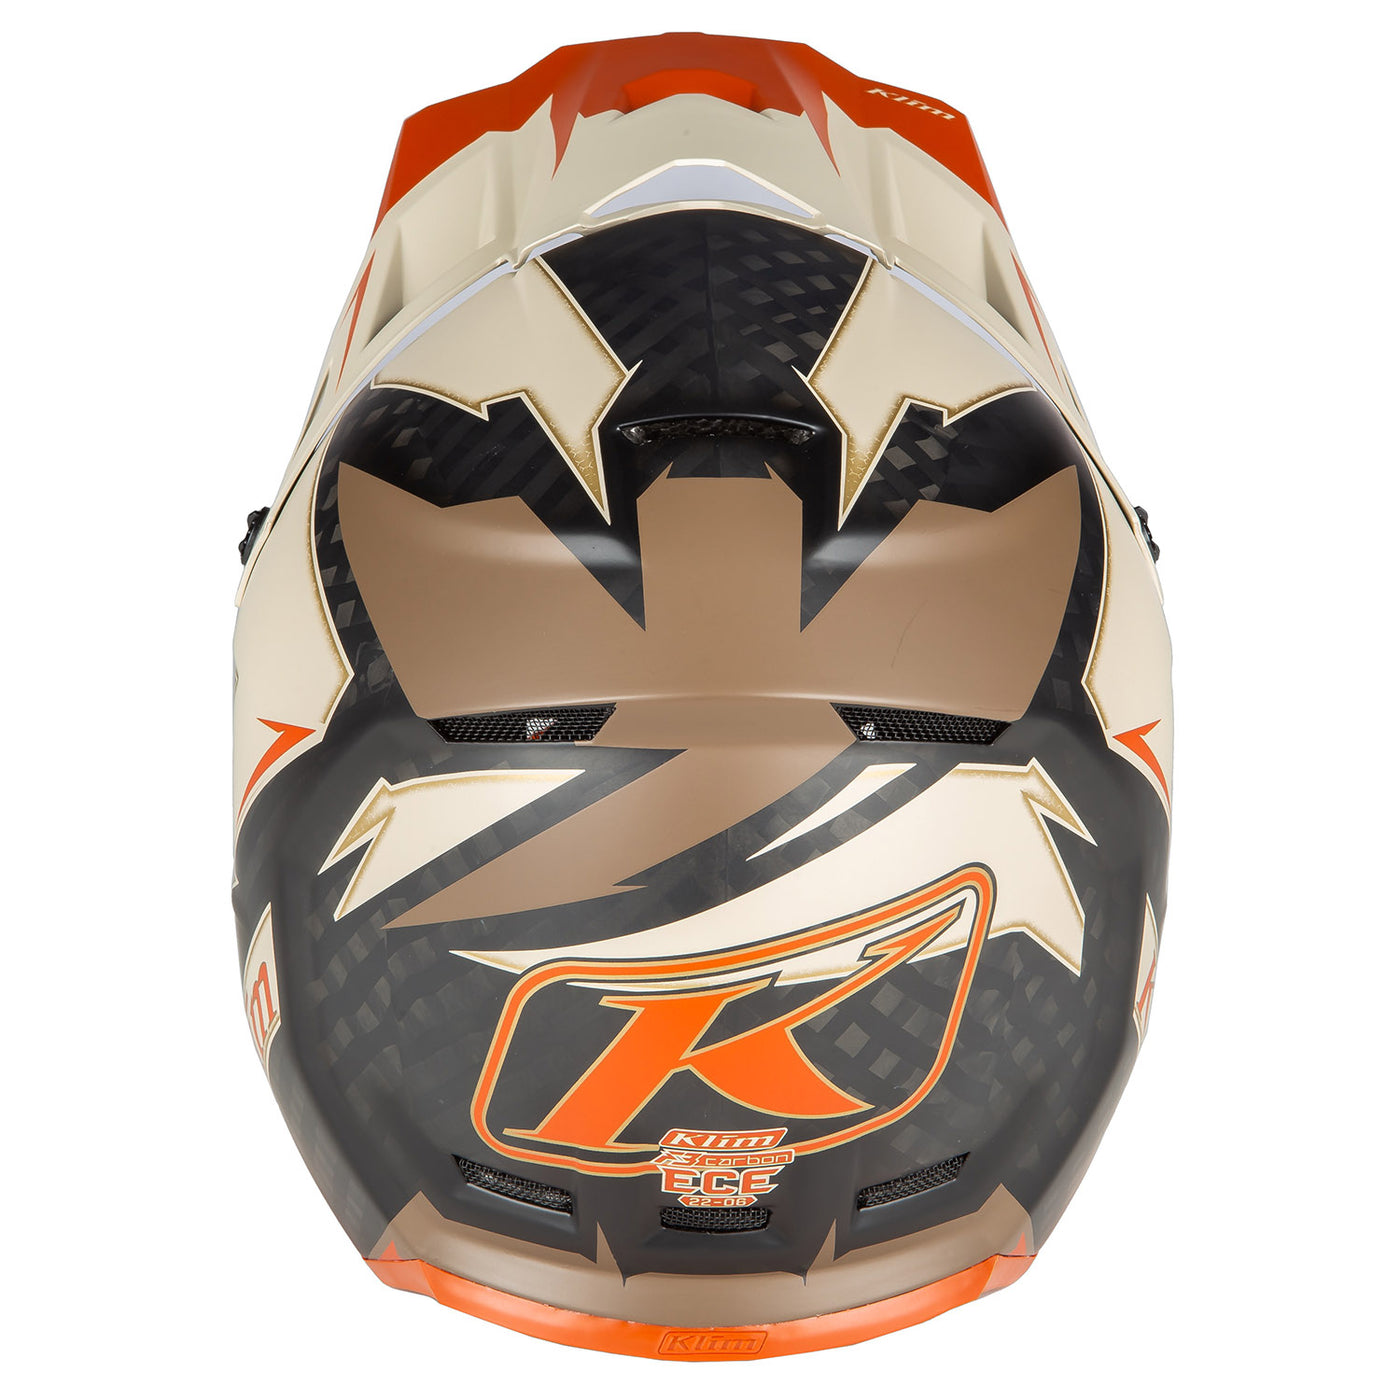 Klim F3 Carbon Off-Road Helmet Lightning Peyote